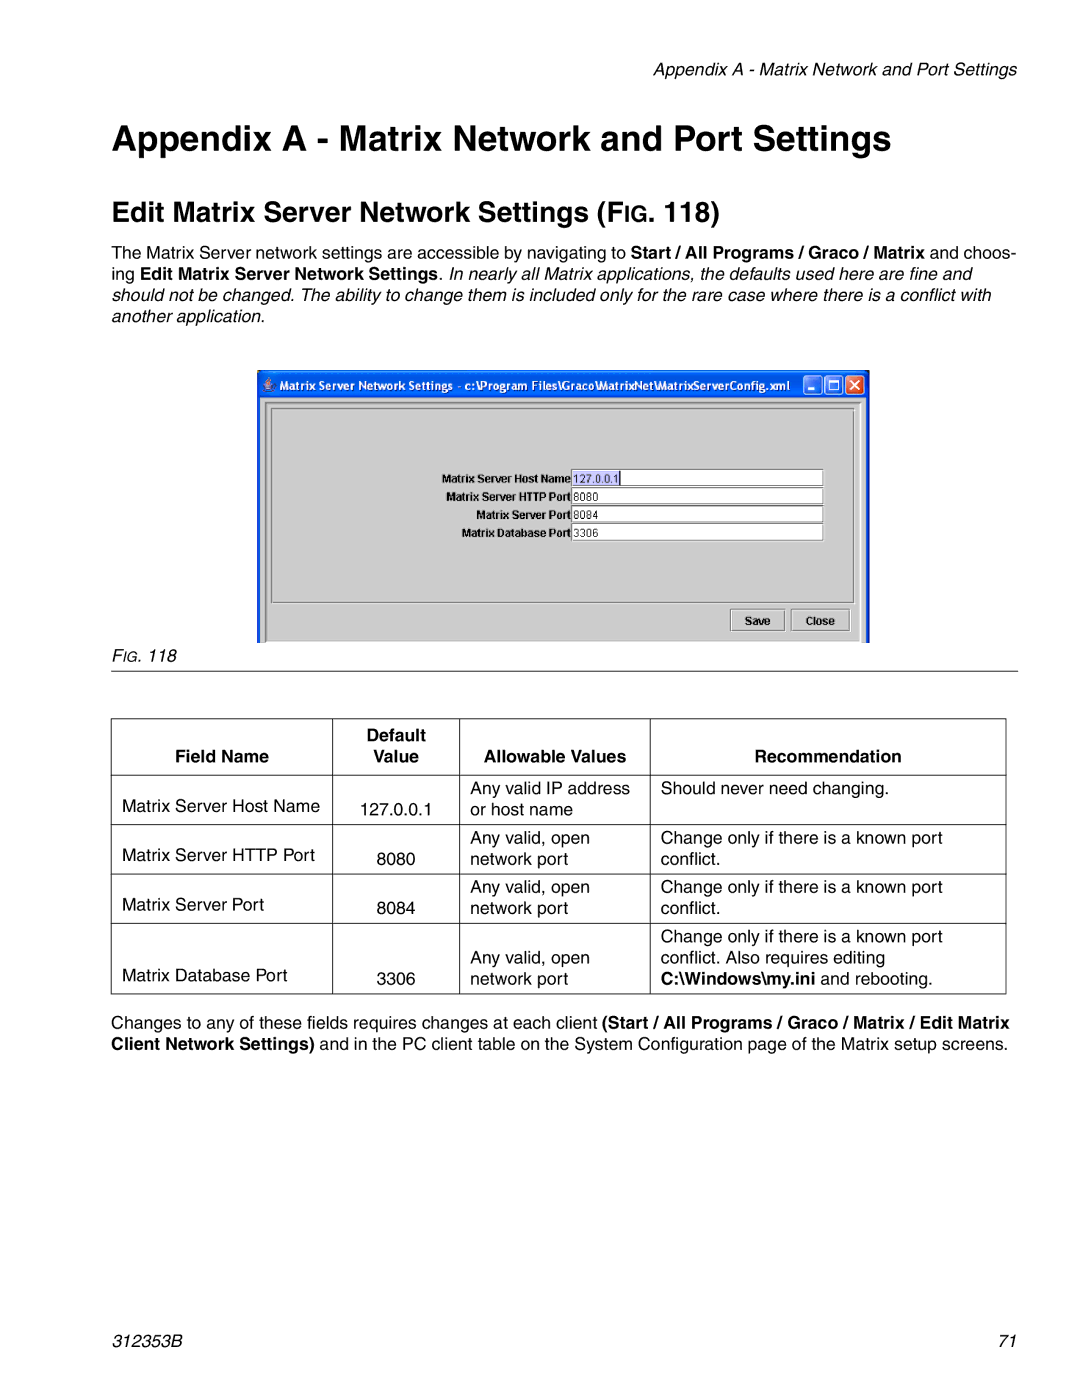 Graco 312353B Appendix a Matrix Network and Port Settings, Edit Matrix Server Network Settings FIG, Default Field Name 